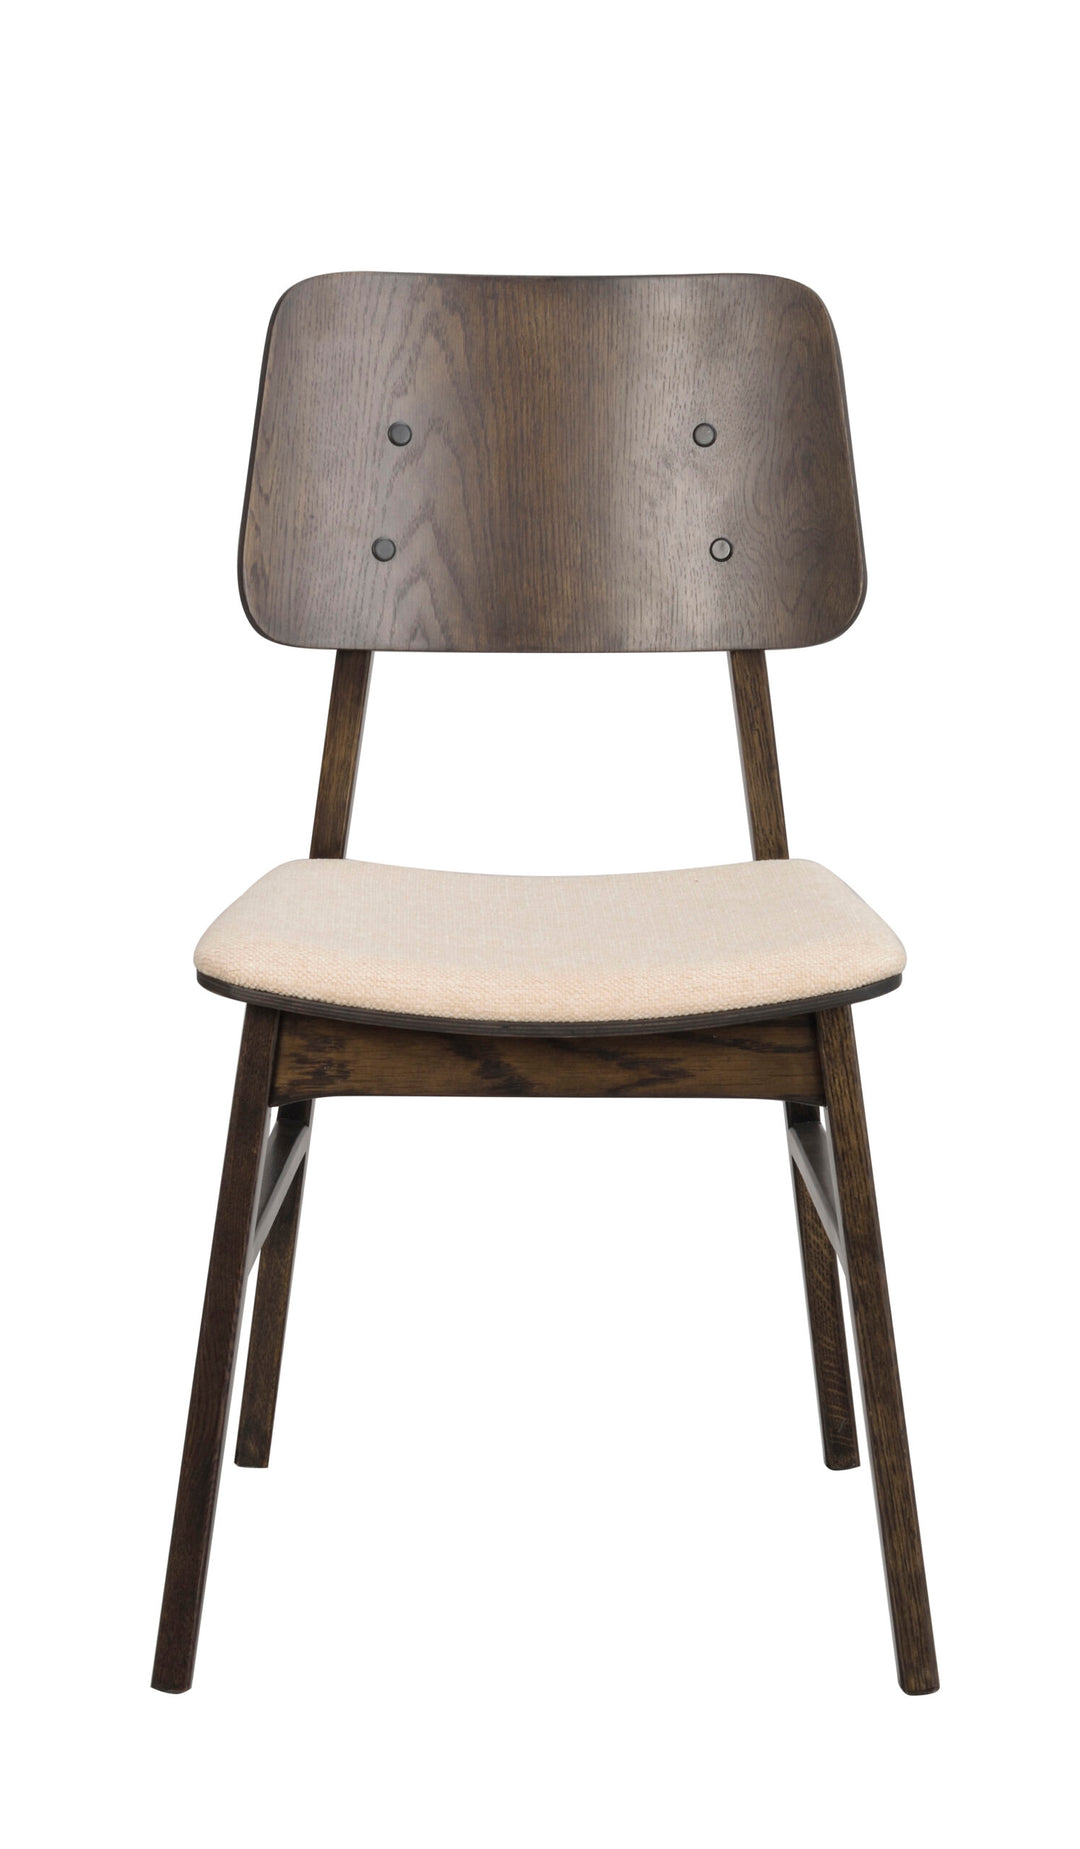 119429_a, Nagano chair, brown_beige